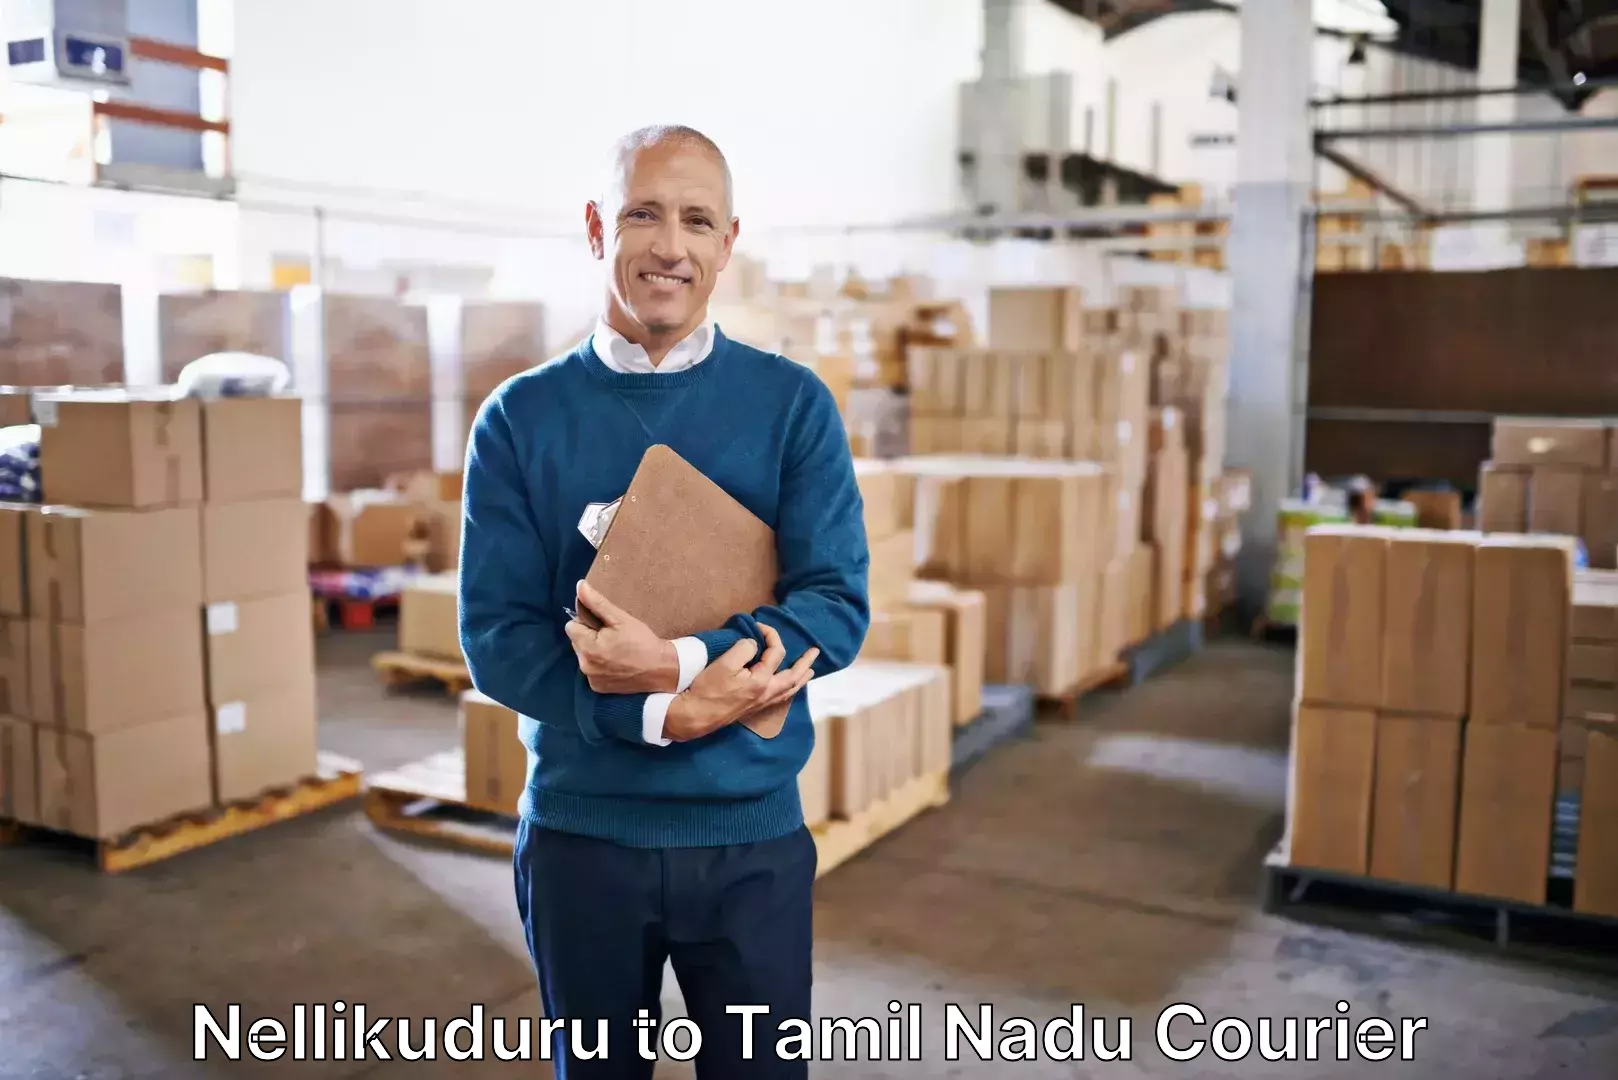 Luggage courier network Nellikuduru to Vandavasi